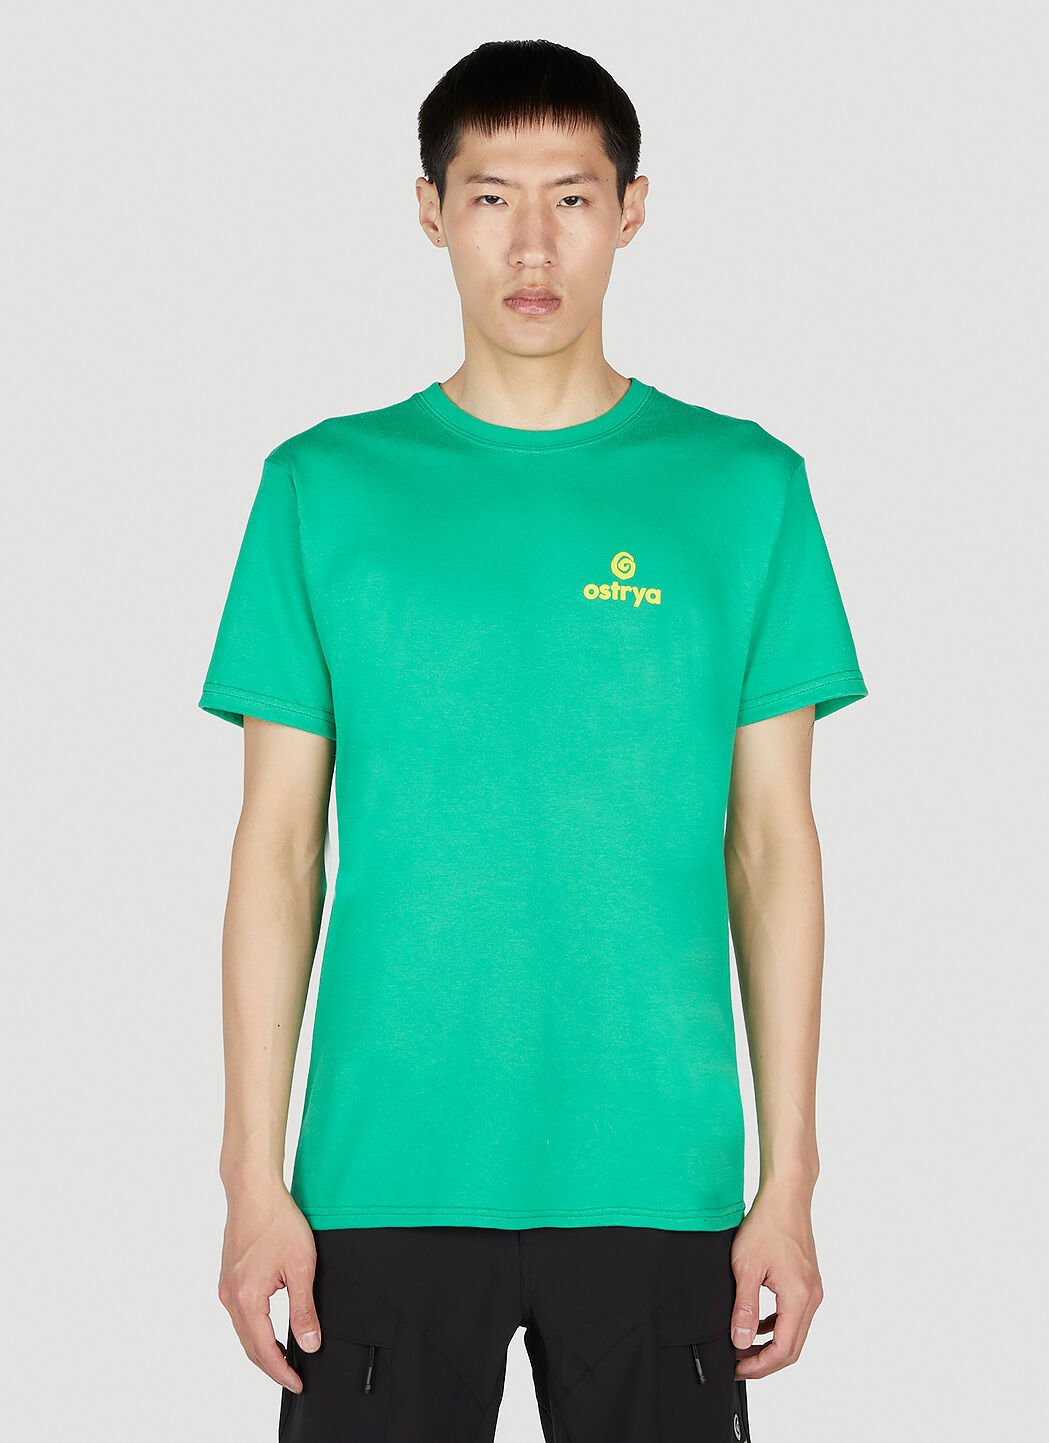 Ostrya 코어 로고 이퀴 티셔츠 그린 ost0148005